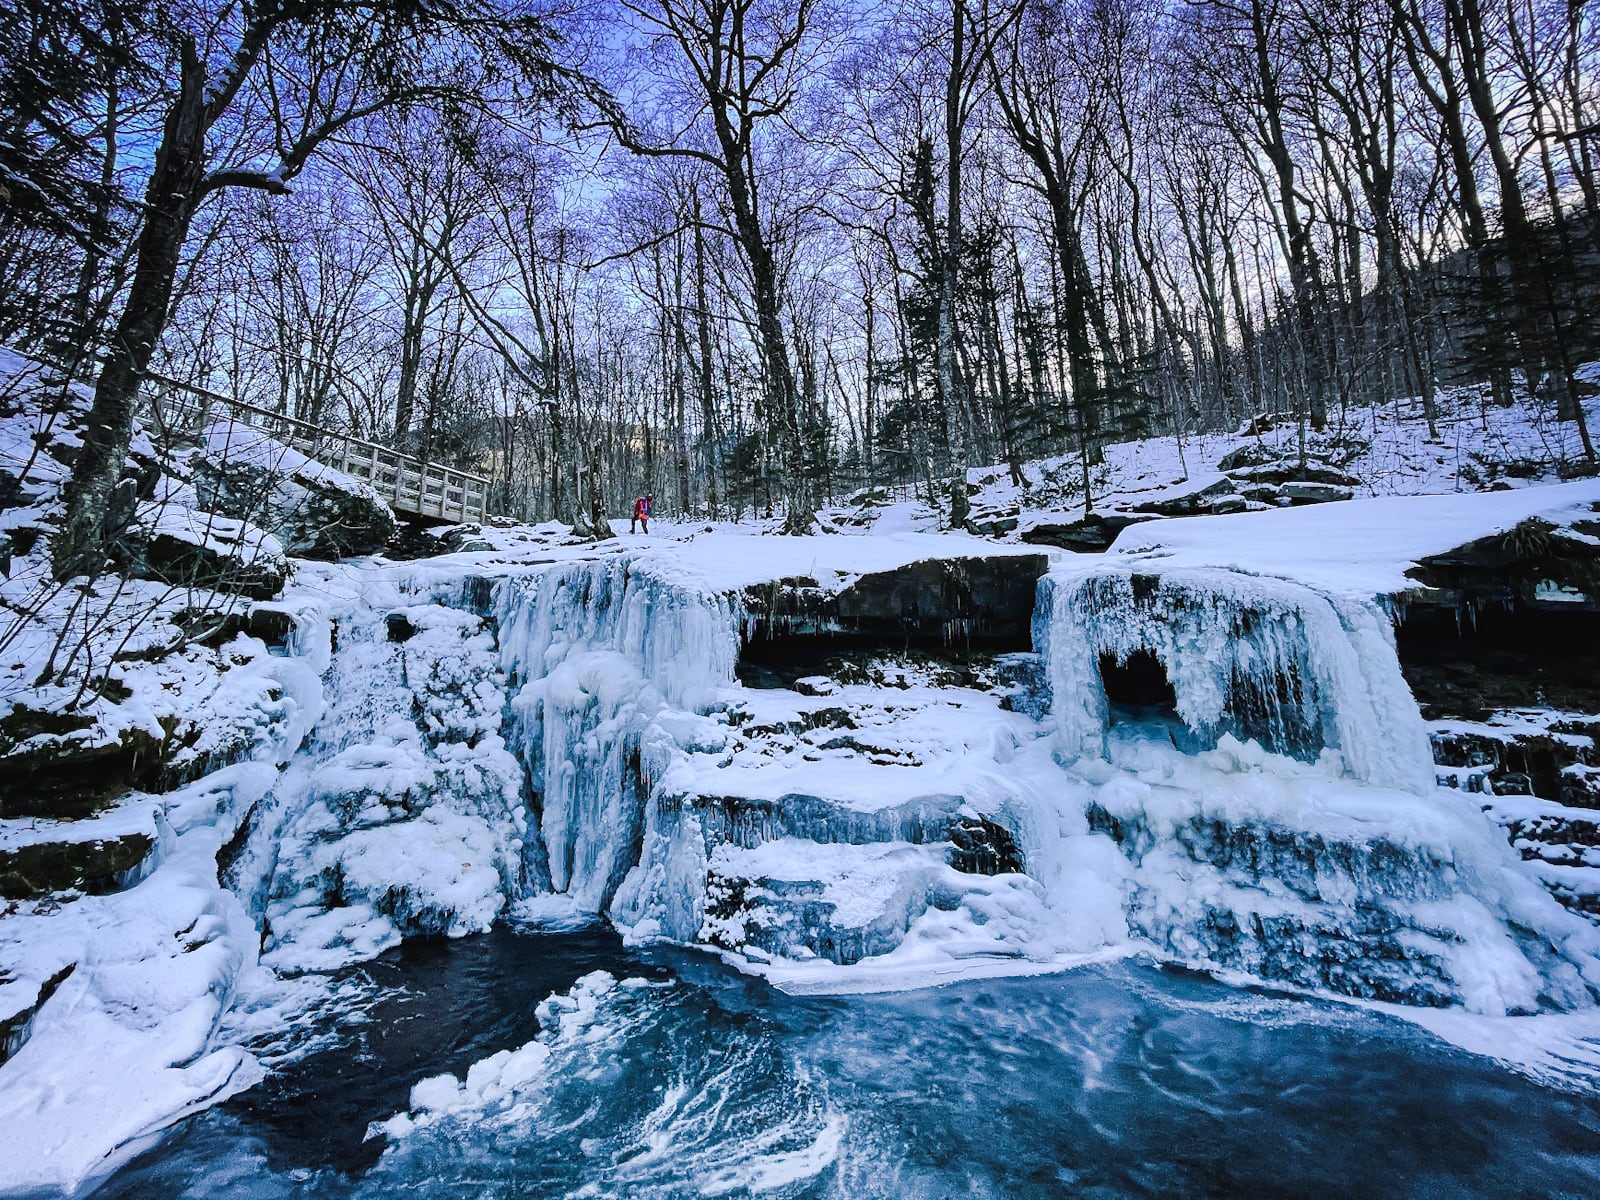 Diamond Notch Falls frozen in winter